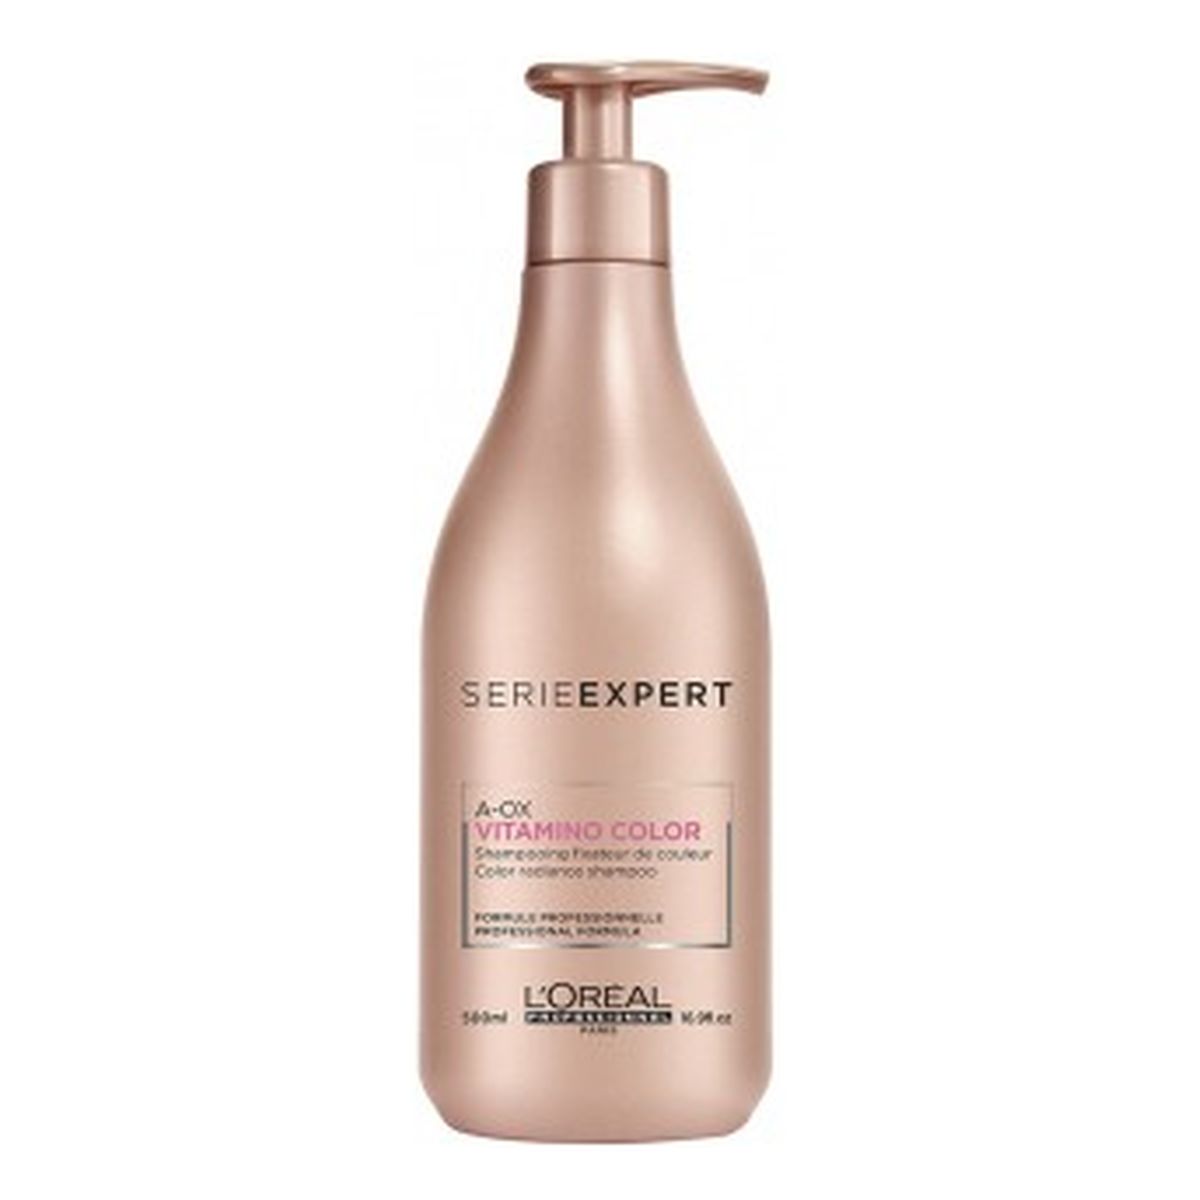 L'Oreal Paris Serie Expert Vitamino Color Shampoo Nabłyszczający szampon do włosów farbowanych 500ml